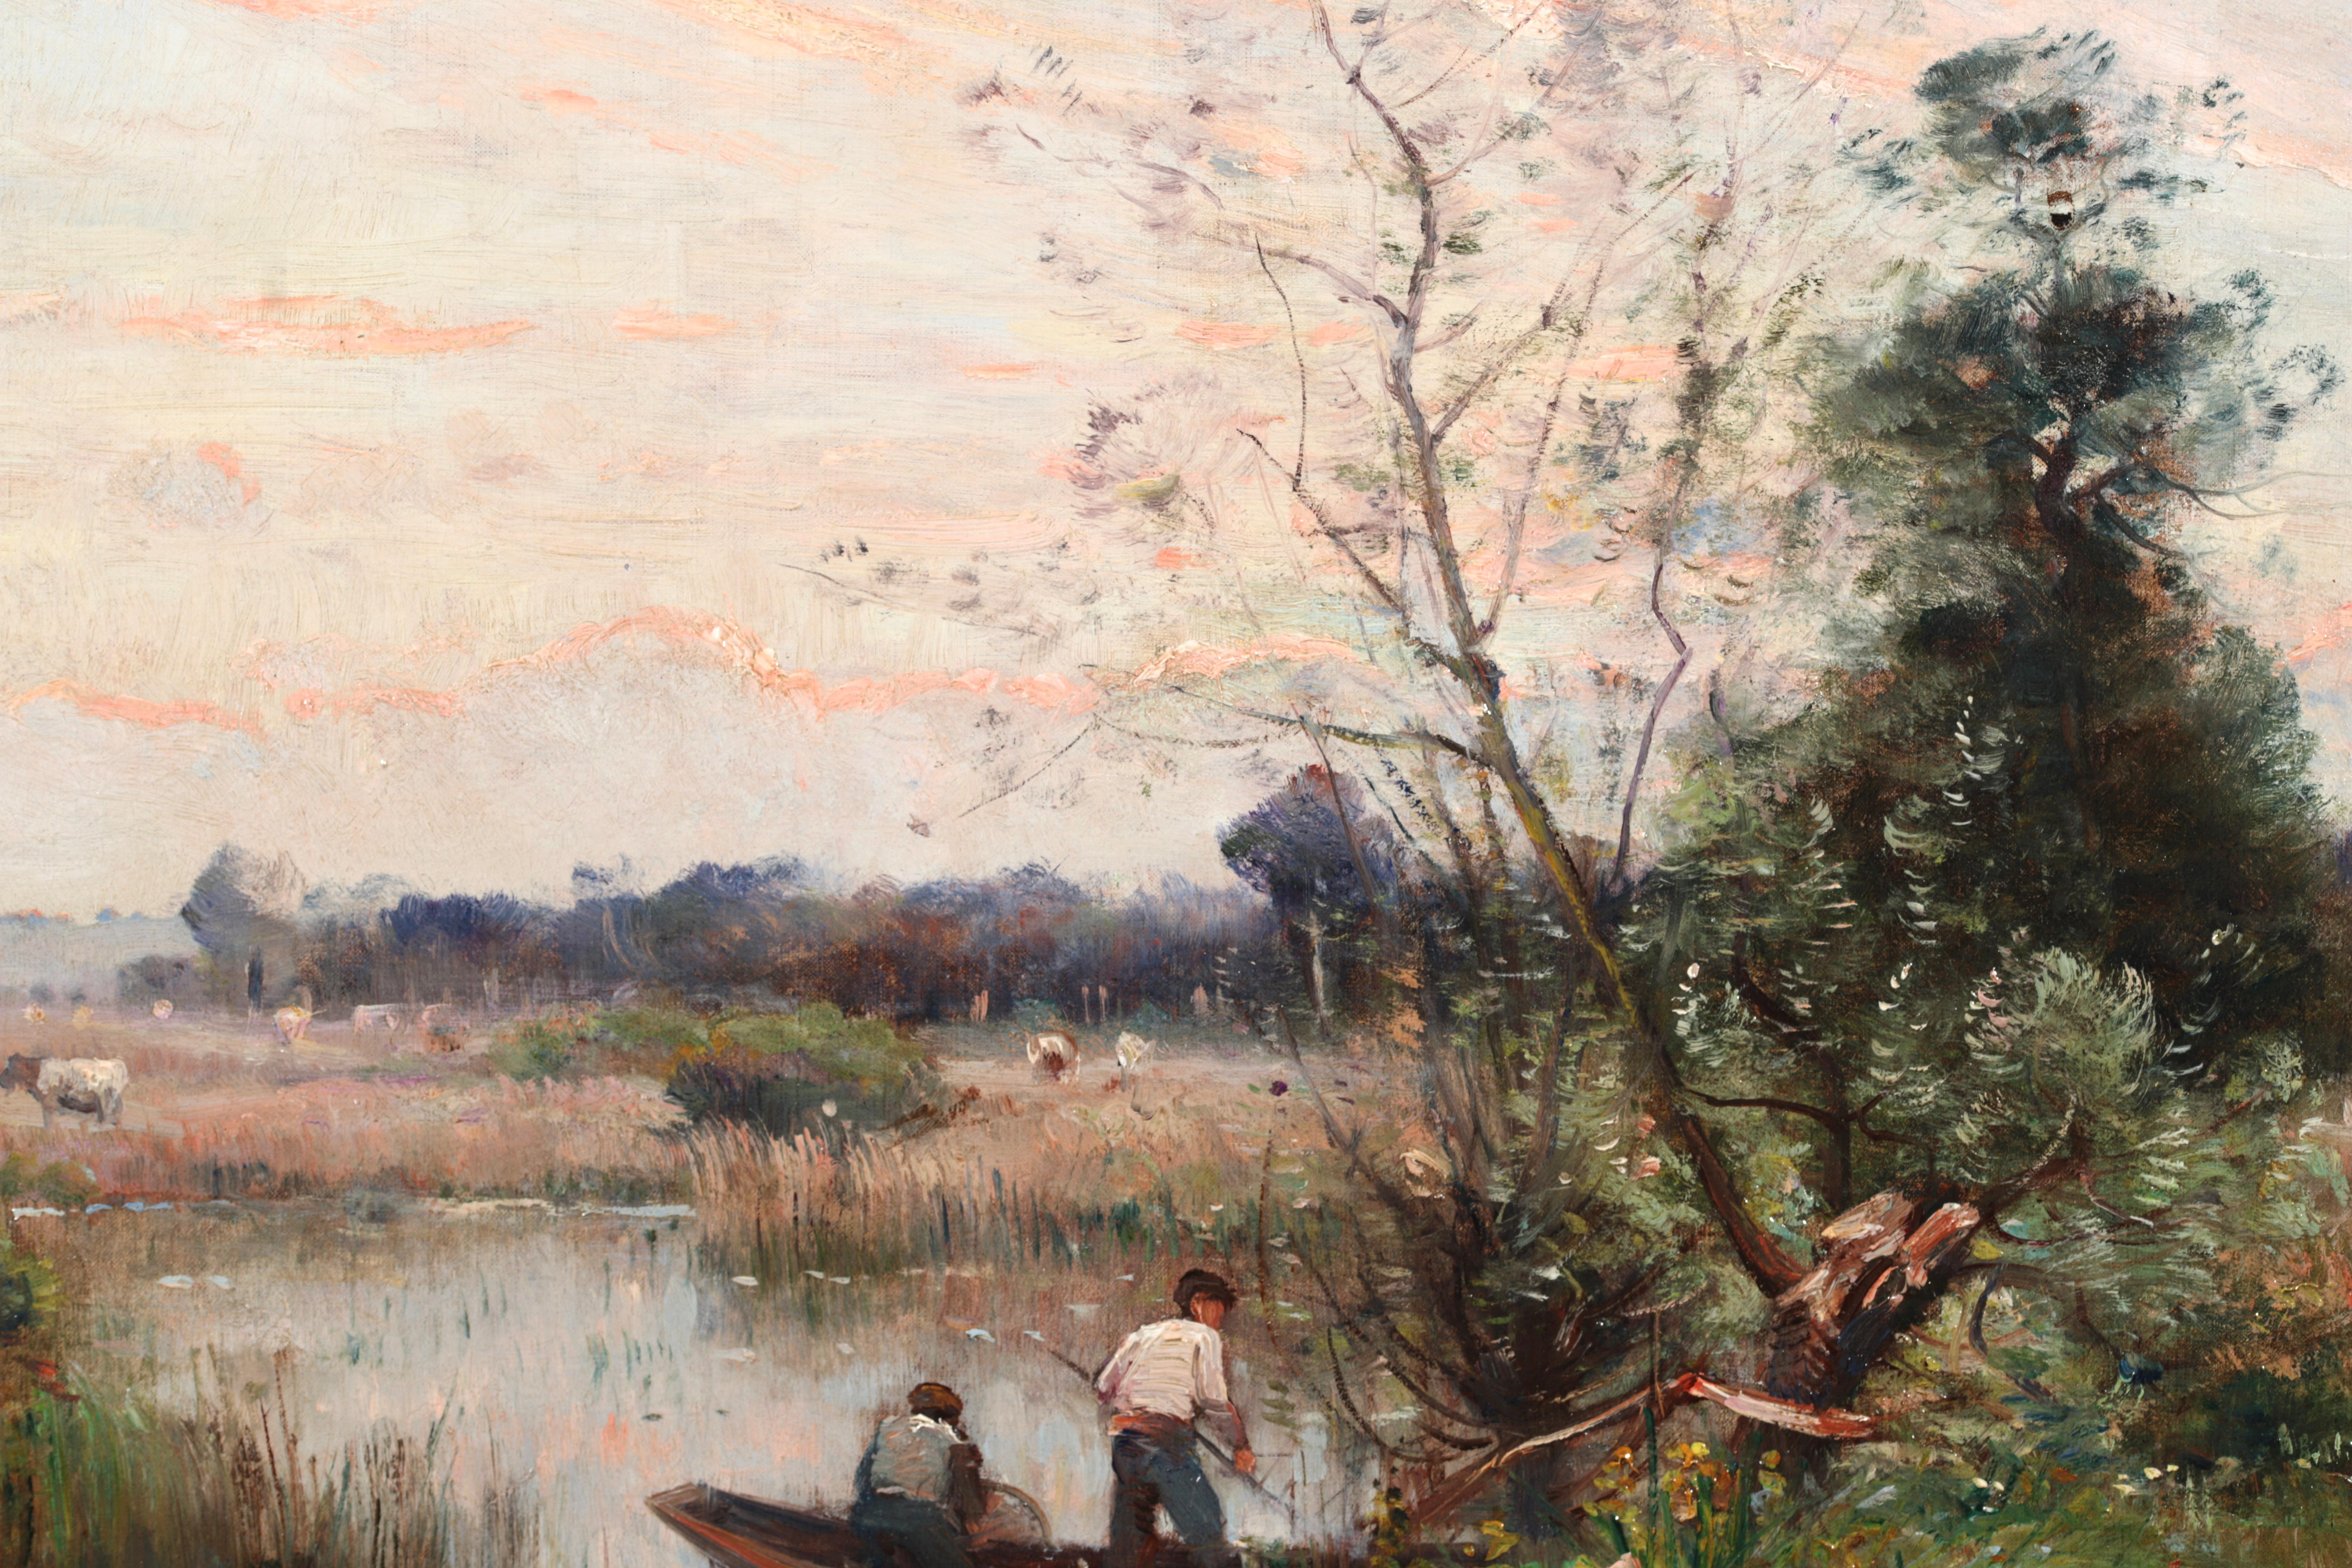 Fishing on a River - Impressionistisches Ölgemälde, Boot auf Fluss Landschaft von Louis Japy 3